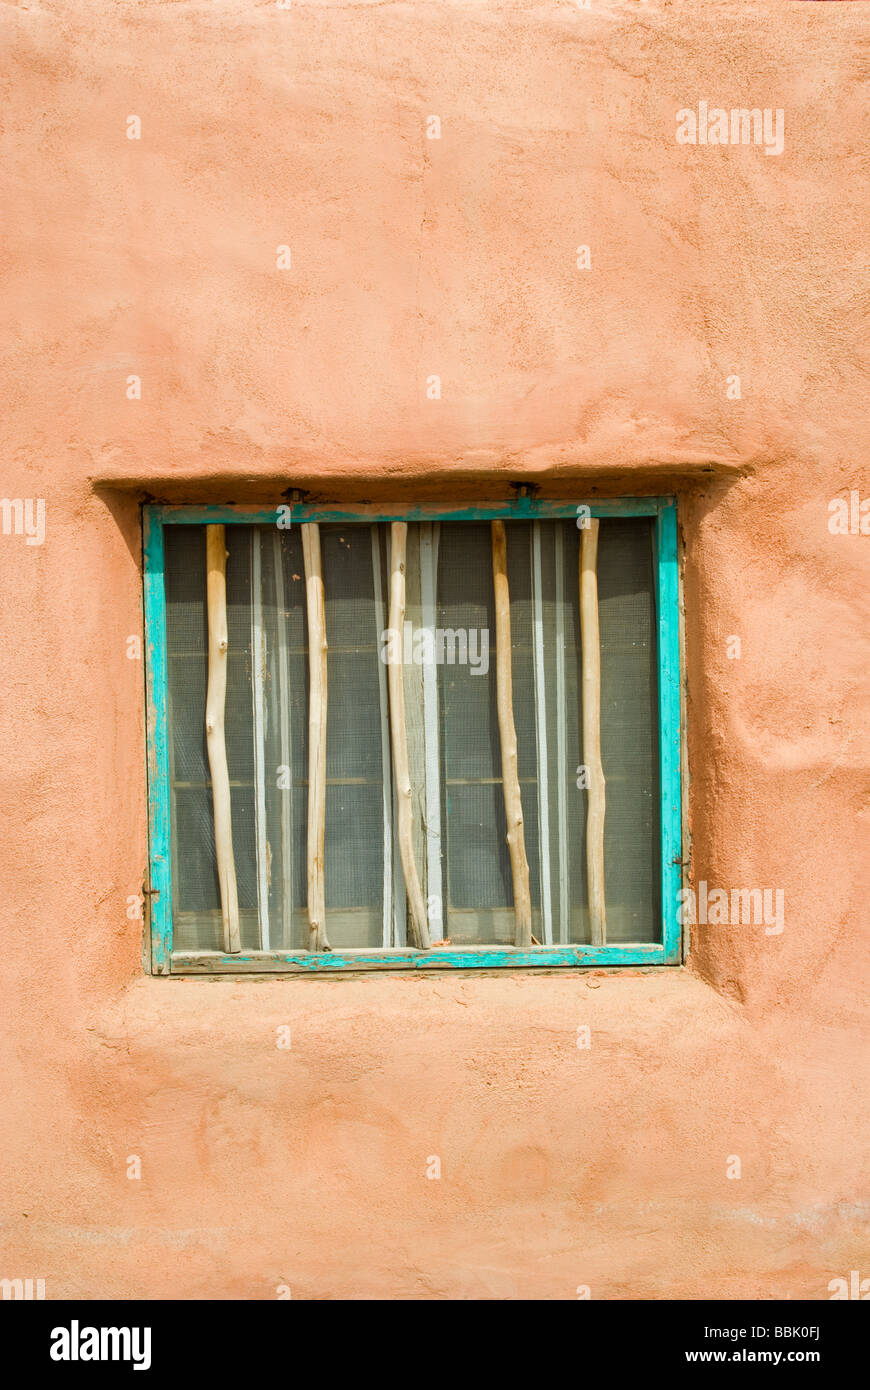 Stati Uniti d'America New Mexico Taos Pueblo Adobe Costruzione di finestra con barre di legno aqua telaio Foto Stock